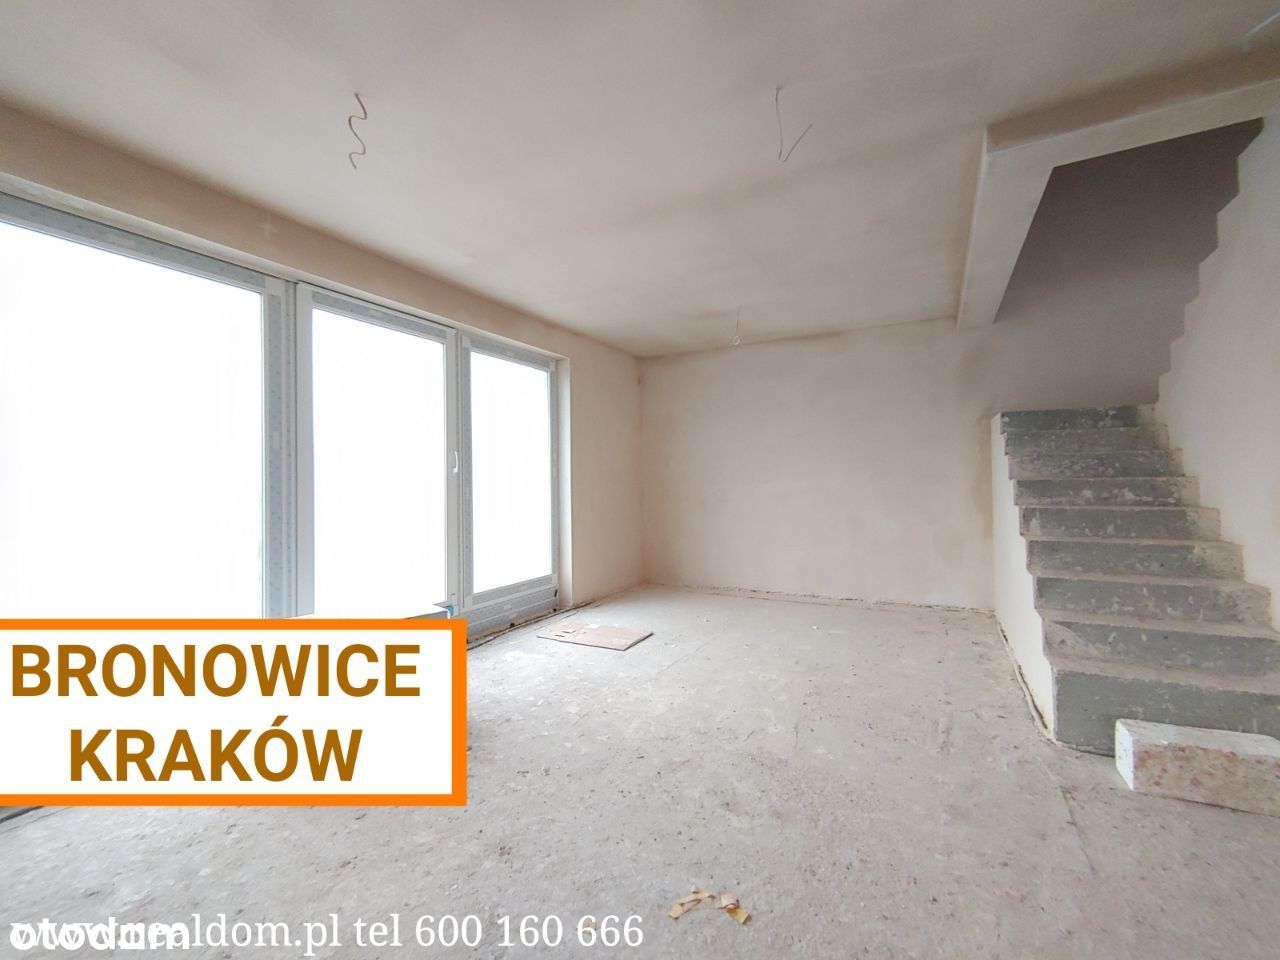 Kraków dom z garażem - działka ok 250 m2 Okazja